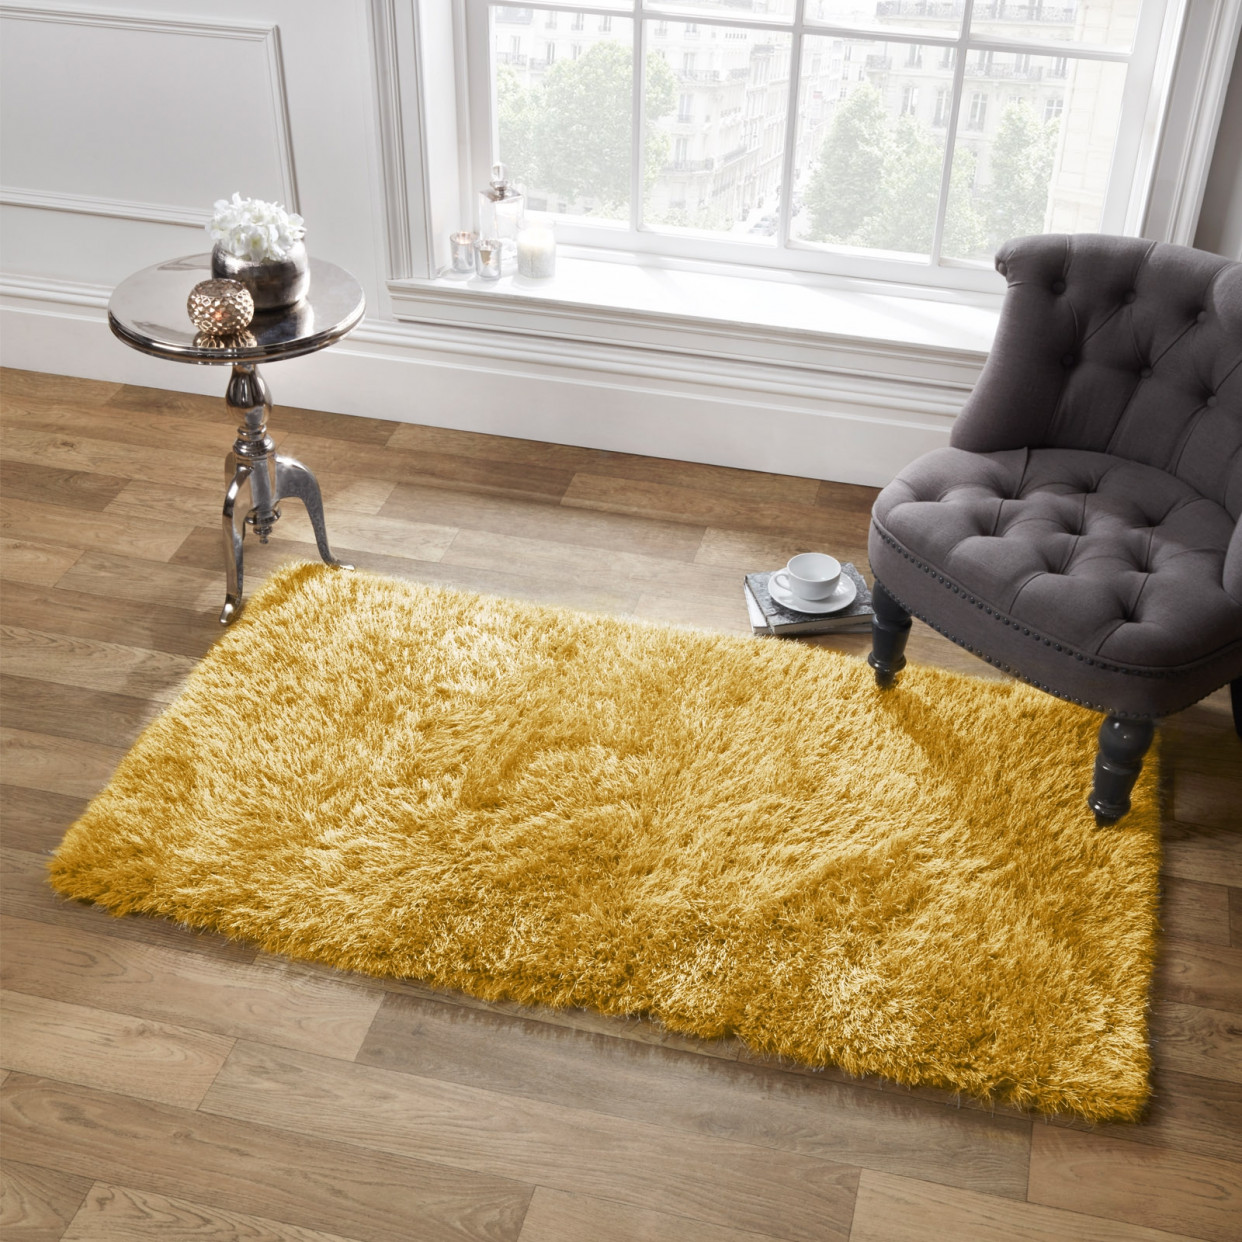 Sienna Large Shaggy Soft Floor Rug 5cm Pile, Ochre Yellow - 160 x 230cm>